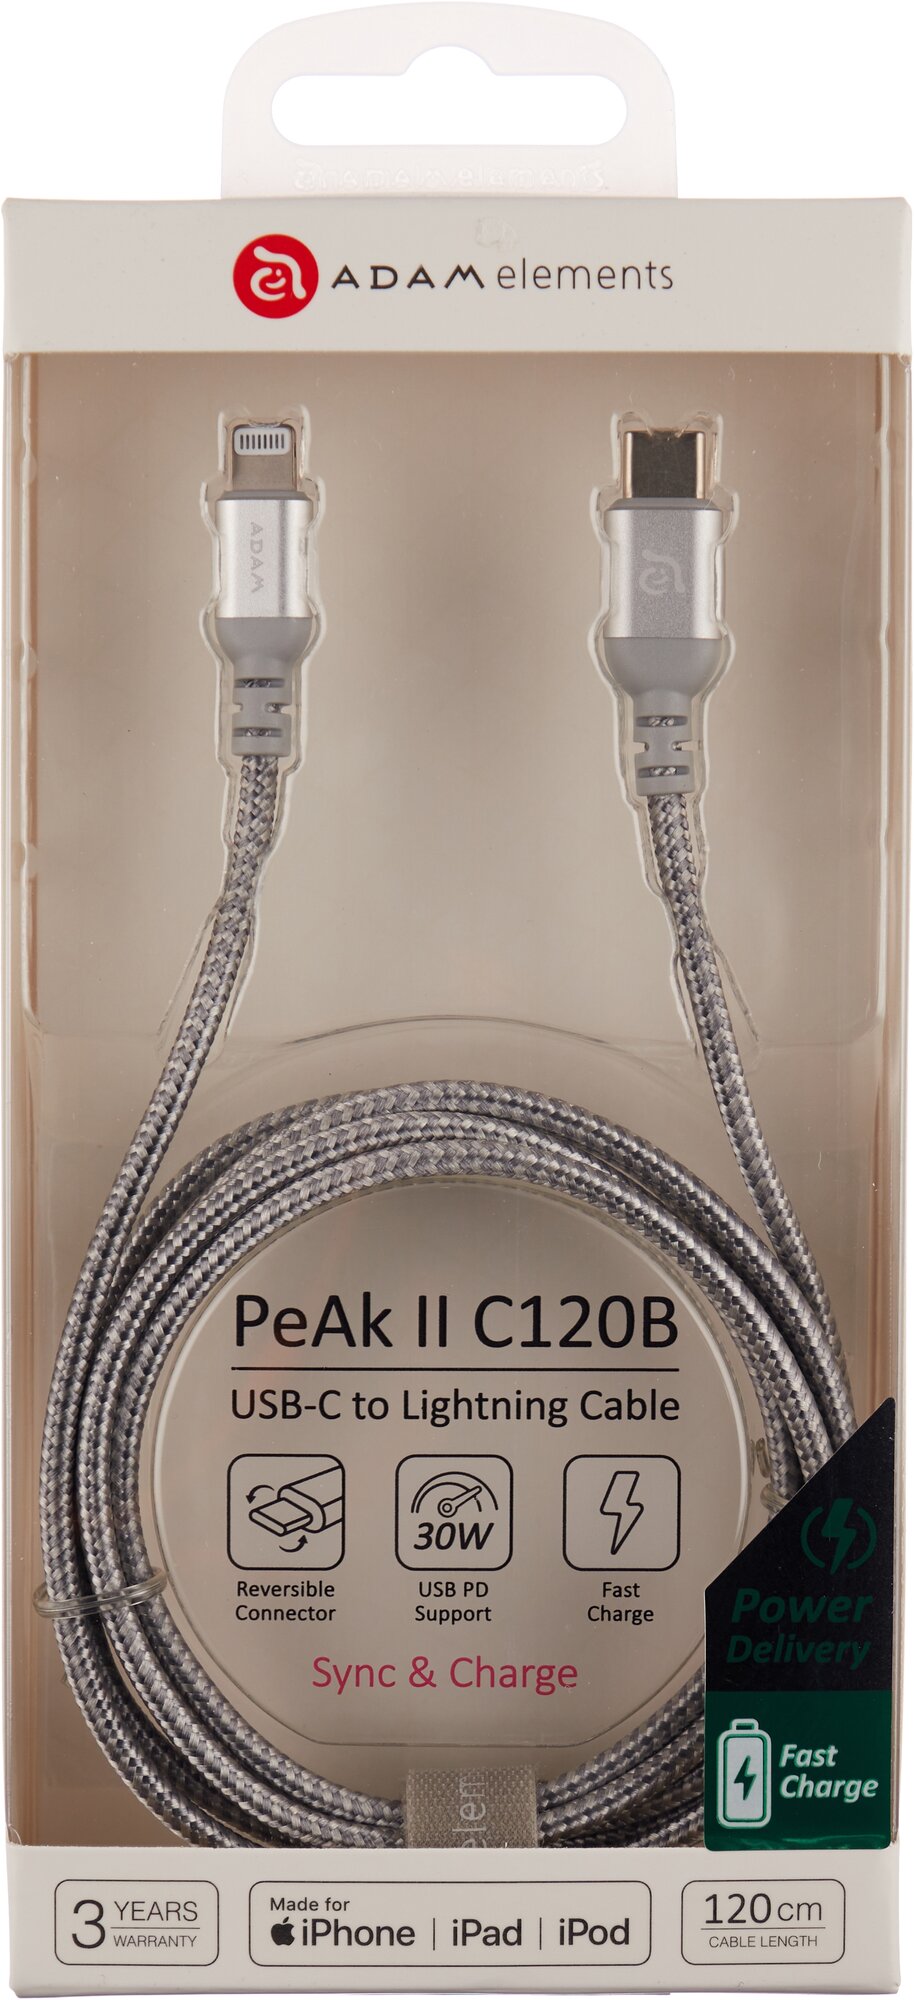 Кабель ADAM elements PeAk II, USB-C/Lightning C120B, серебристый